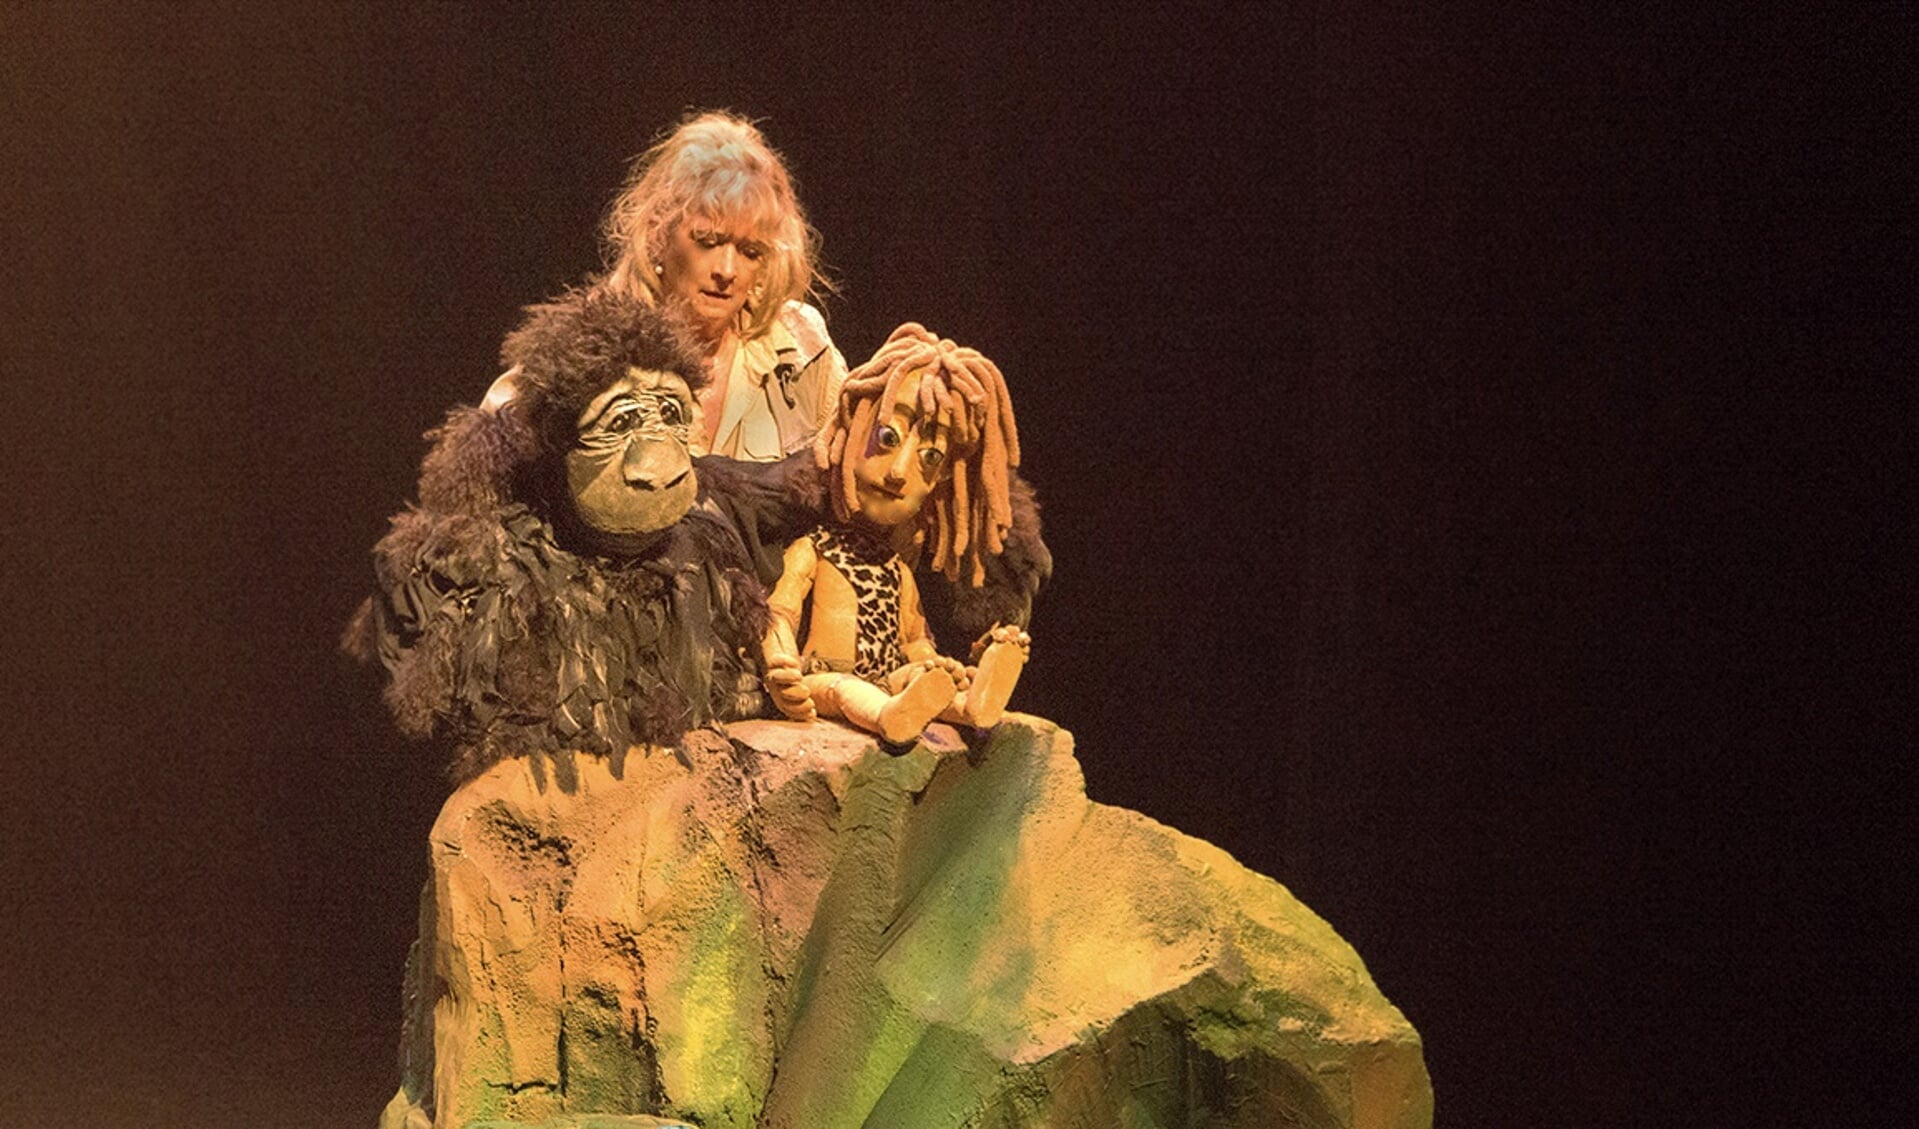 De poppen van Ilja van der Pouw stelen de show in de voorstelling Tarzan. (Foto: aangeleverd)